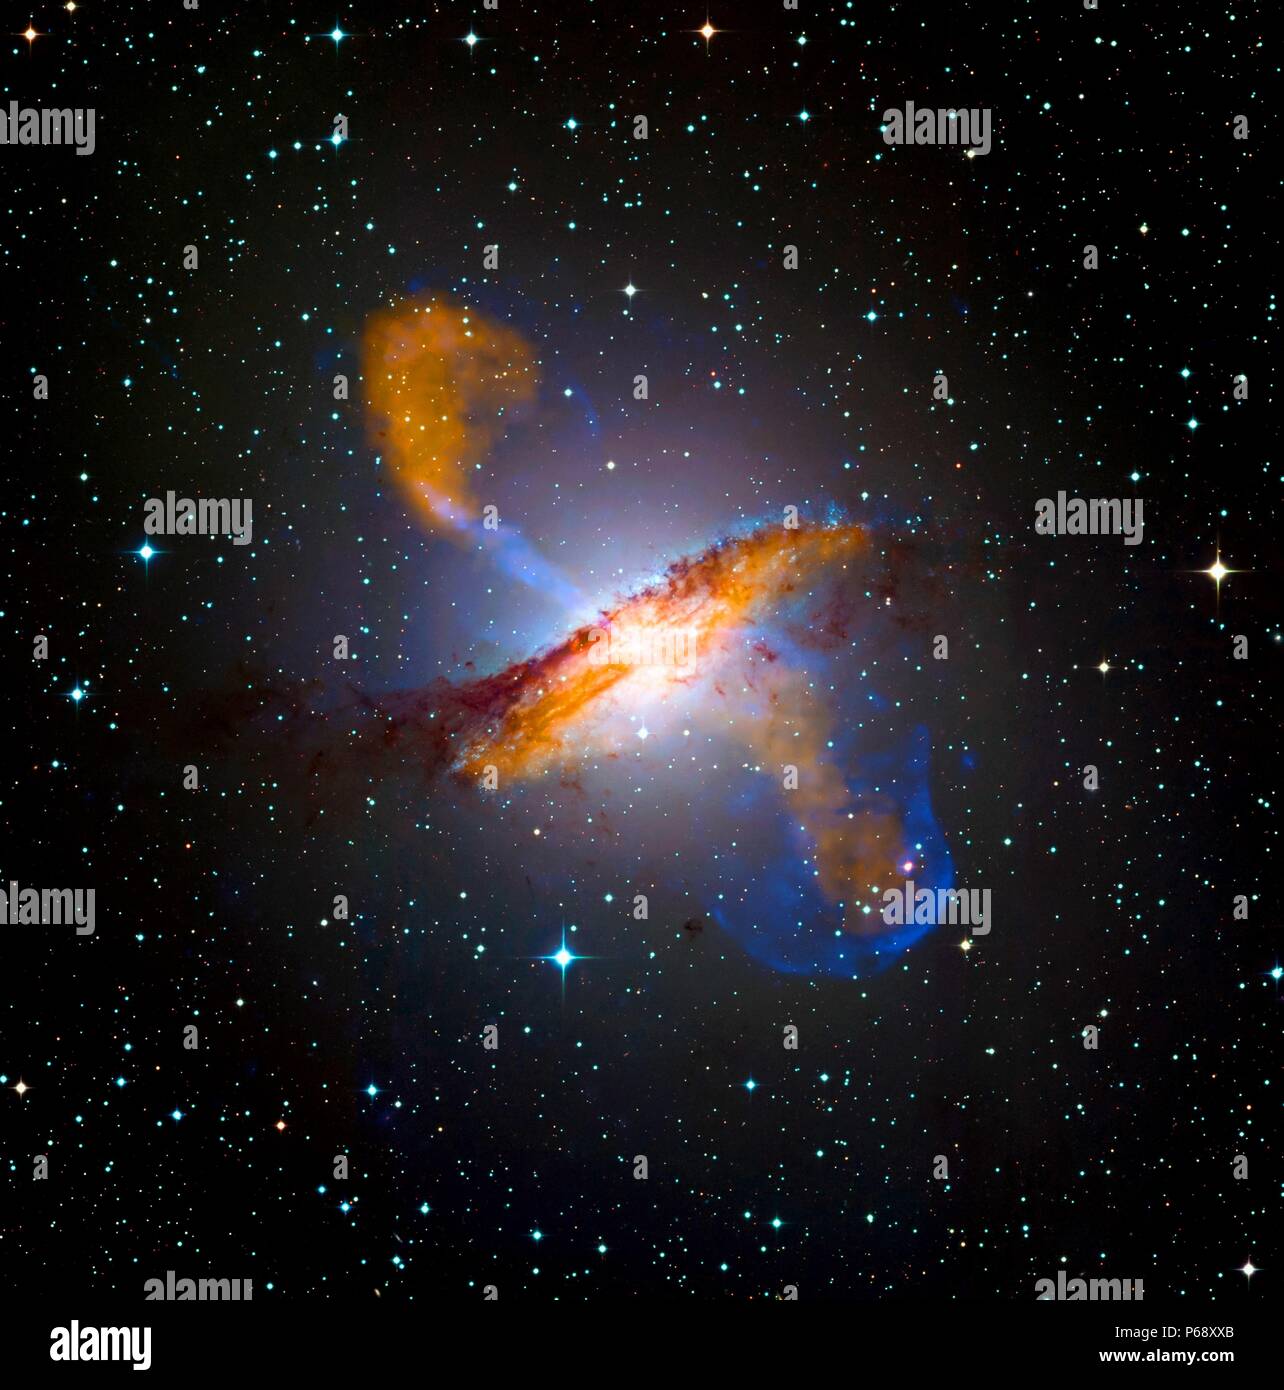 Photographie d'un trou noir dans un Centaures, un célèbre galaxie dans la constellation du Centaure. Datée 2009 Banque D'Images